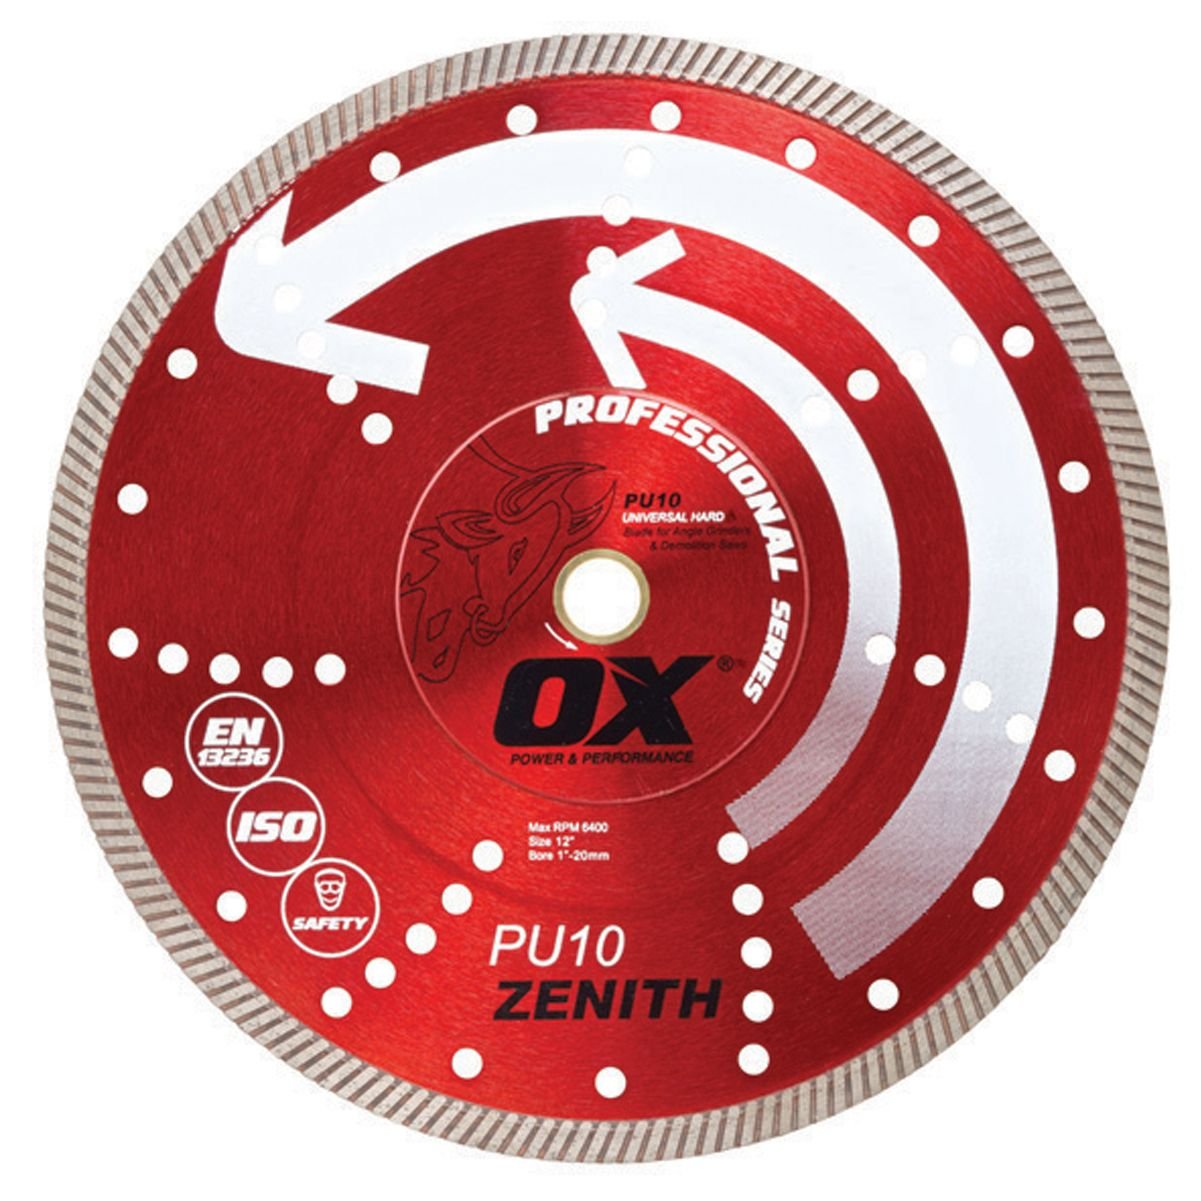 OX-PU10-14 - PU10 TURBO DIAMOND BLADE